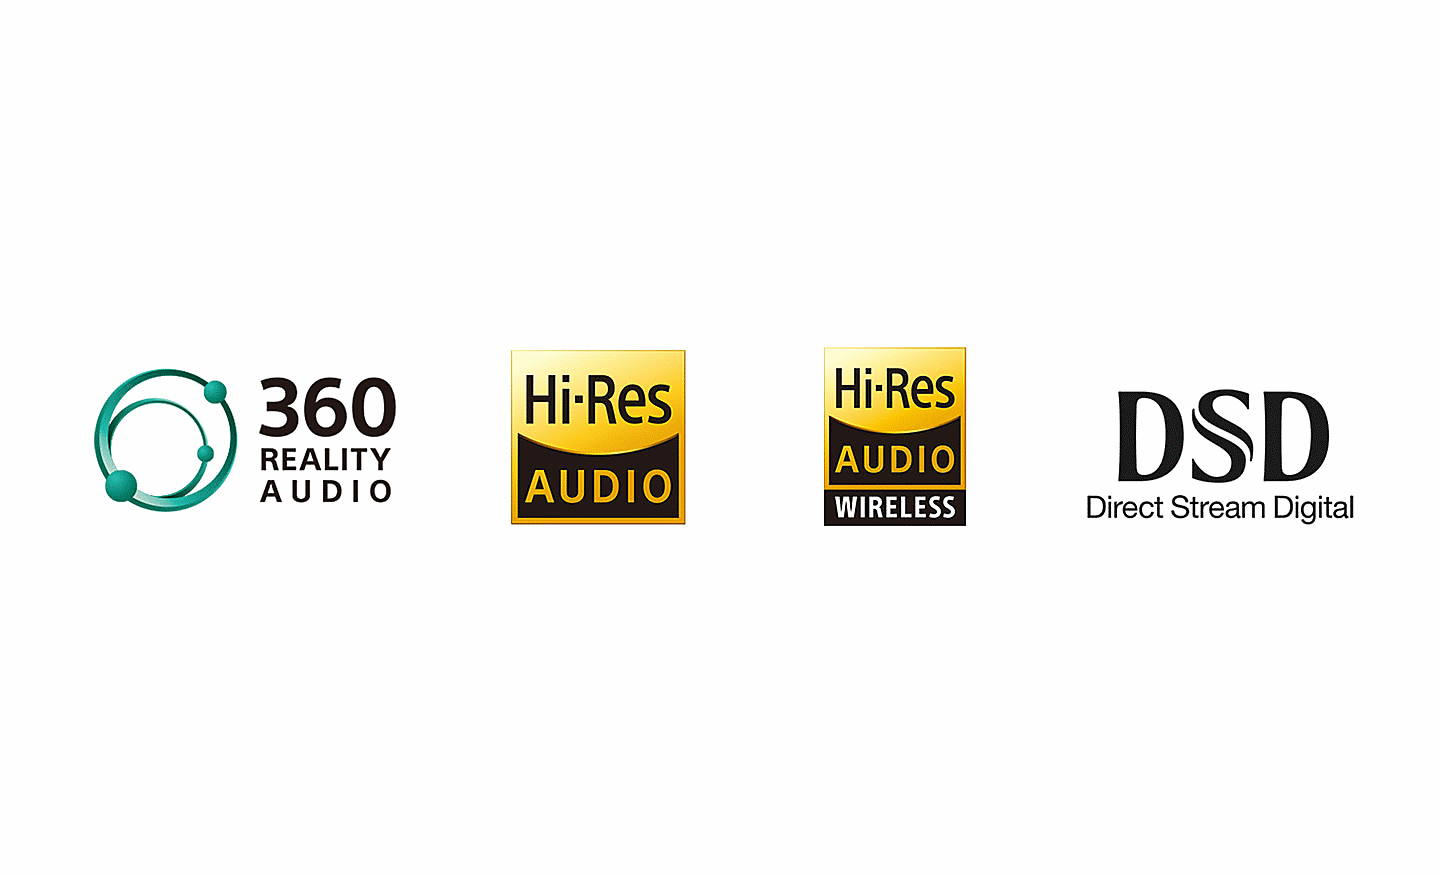 Λογότυπο 360 Reality Audio, λογότυπο Hi-Res Audio, λογότυπο Hi-Res Audio Wireless, λογότυπο DSD Direct Stream Digital